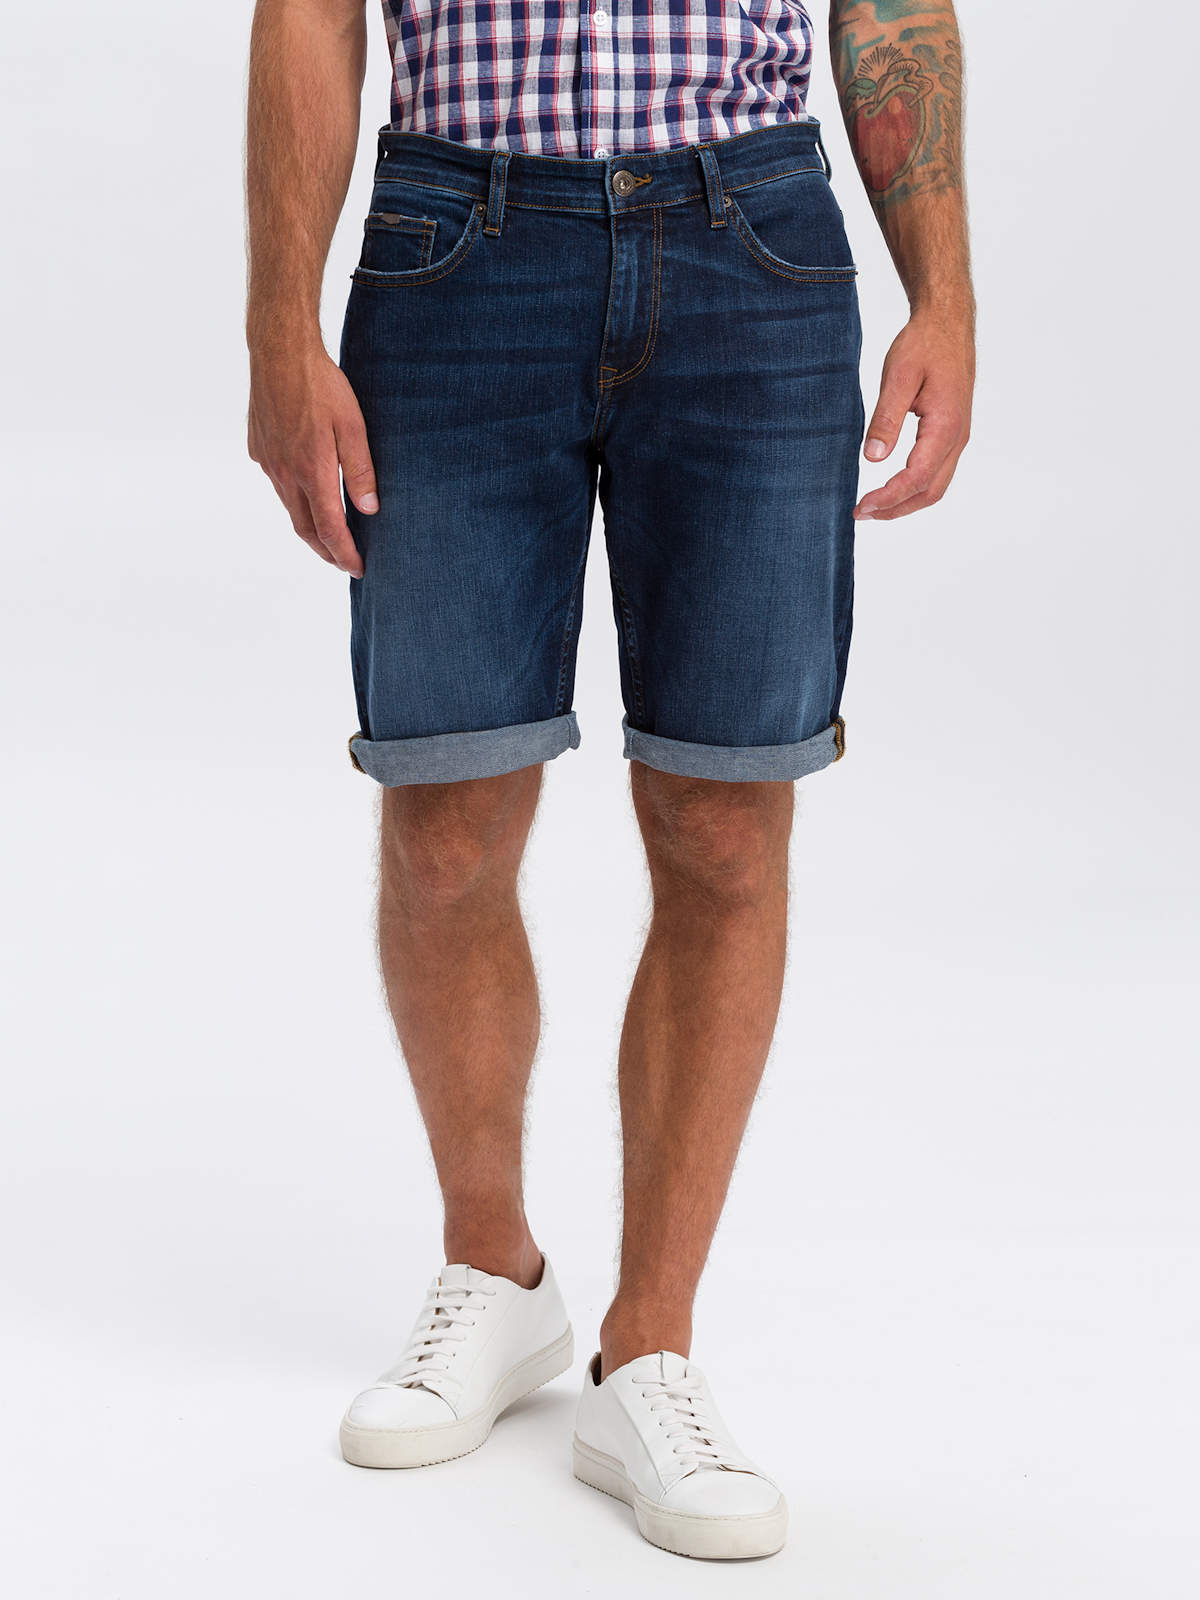 Джинсовые шорты мужские Cross Jeans A565-142 синие 30